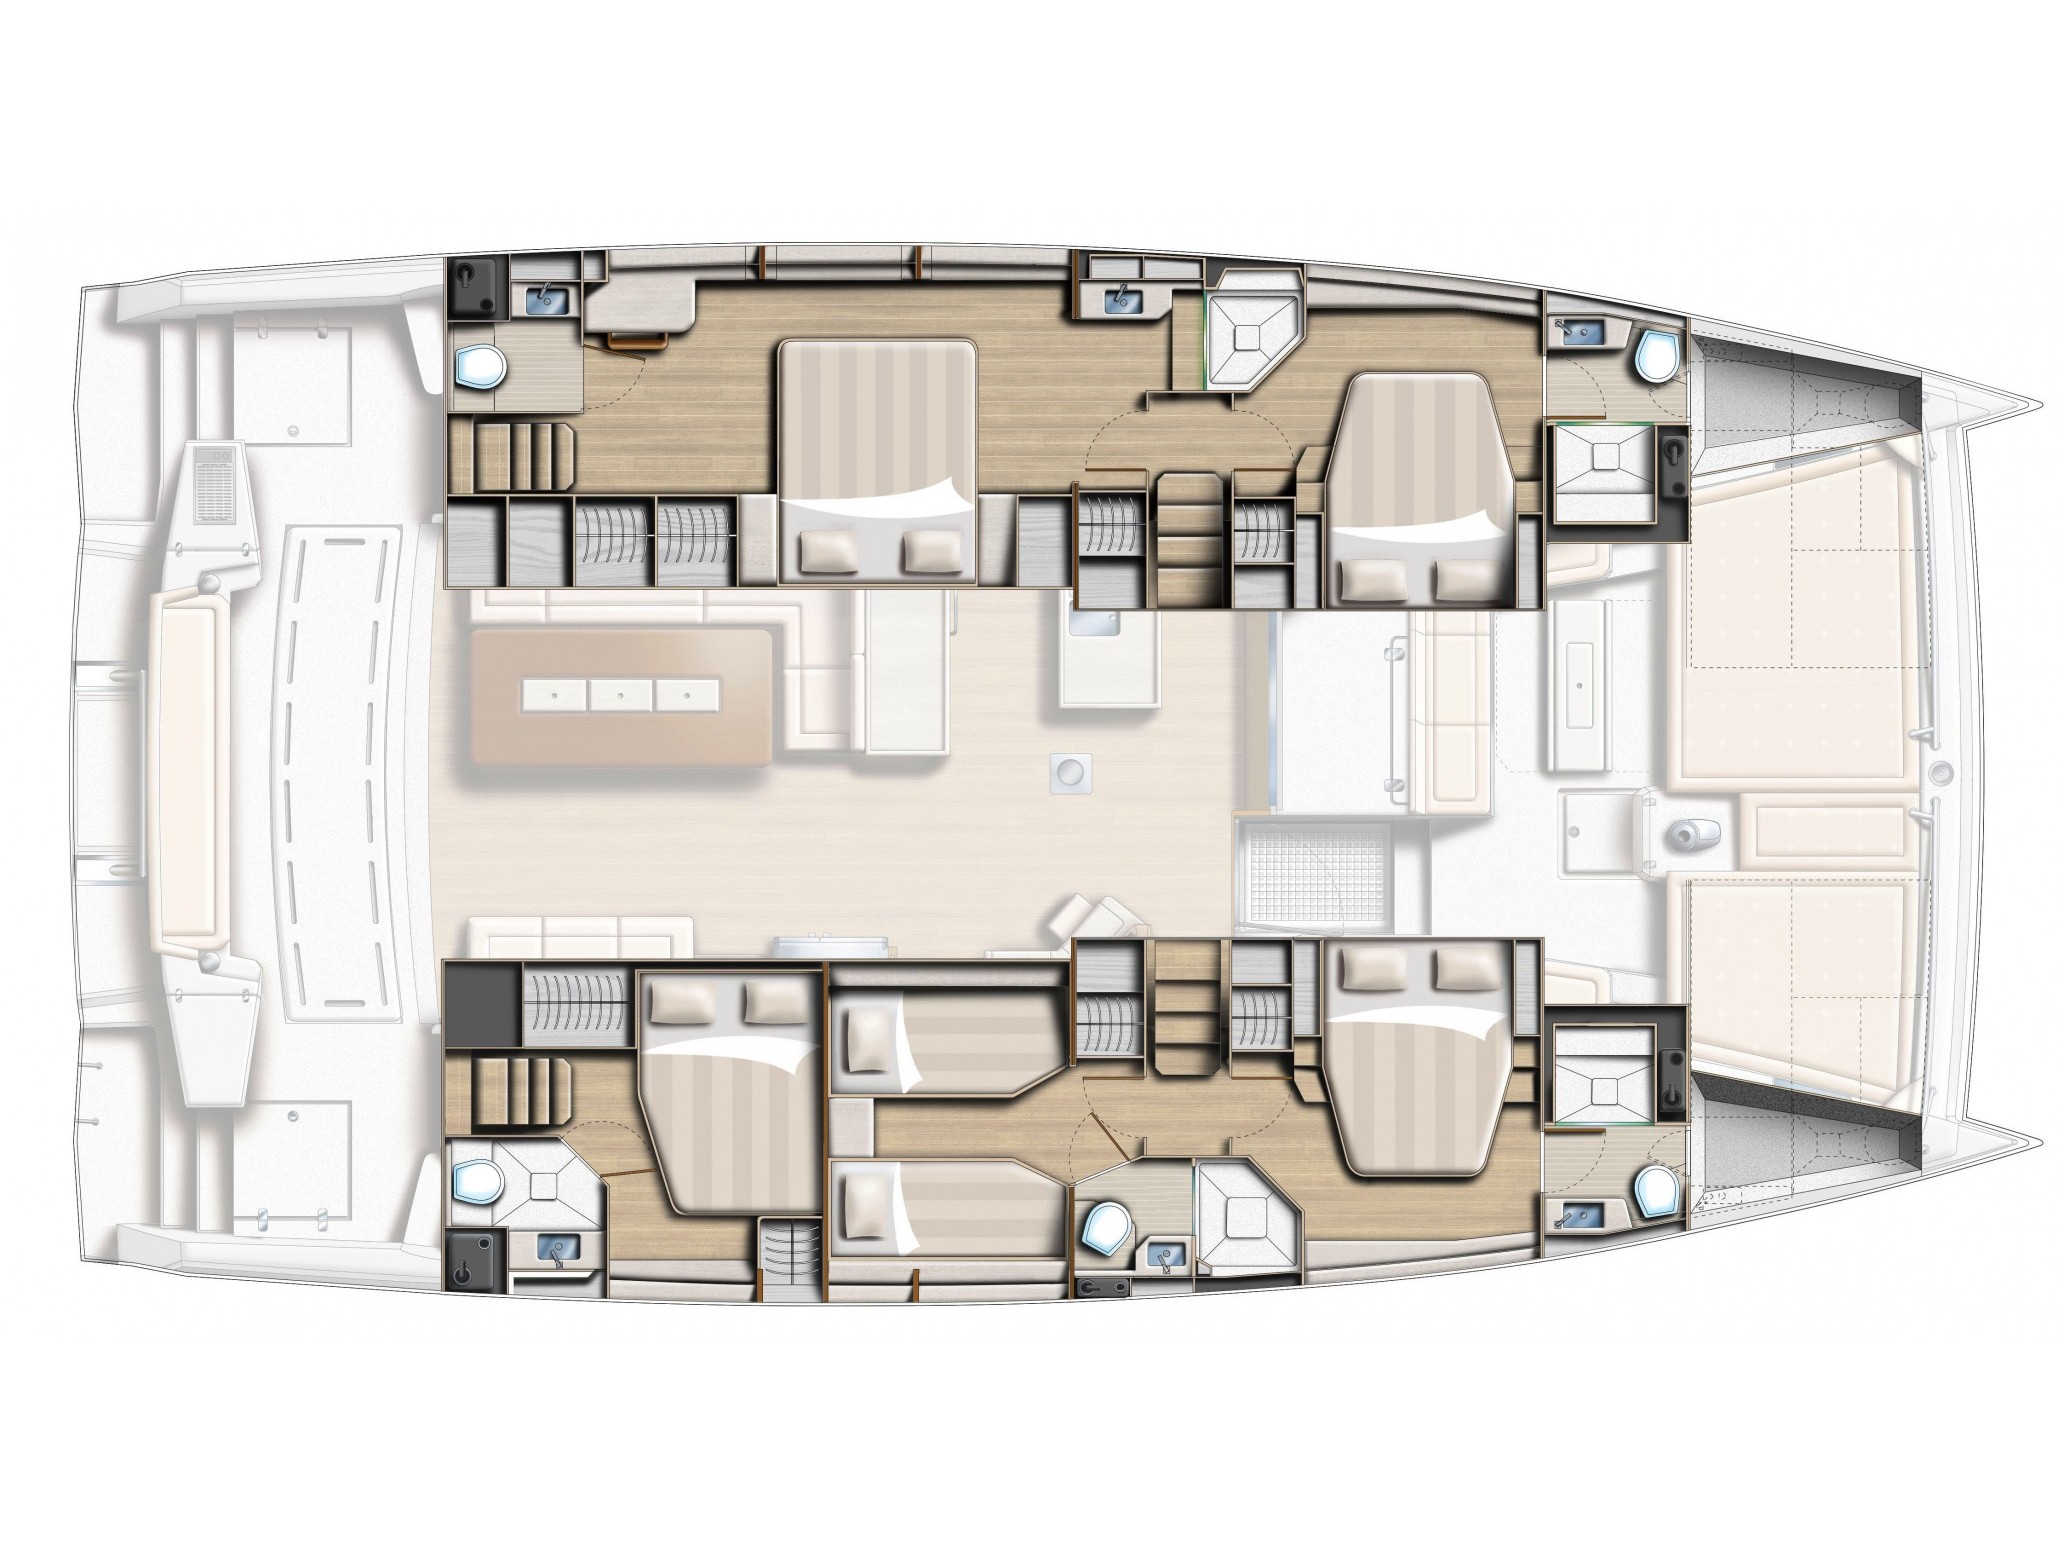 Bali 5.4 - Luxury yacht charter Italy & Boat hire in Italy Sicily Aeolian Islands Capo d'Orlando Capo d'Orlando Marina 5